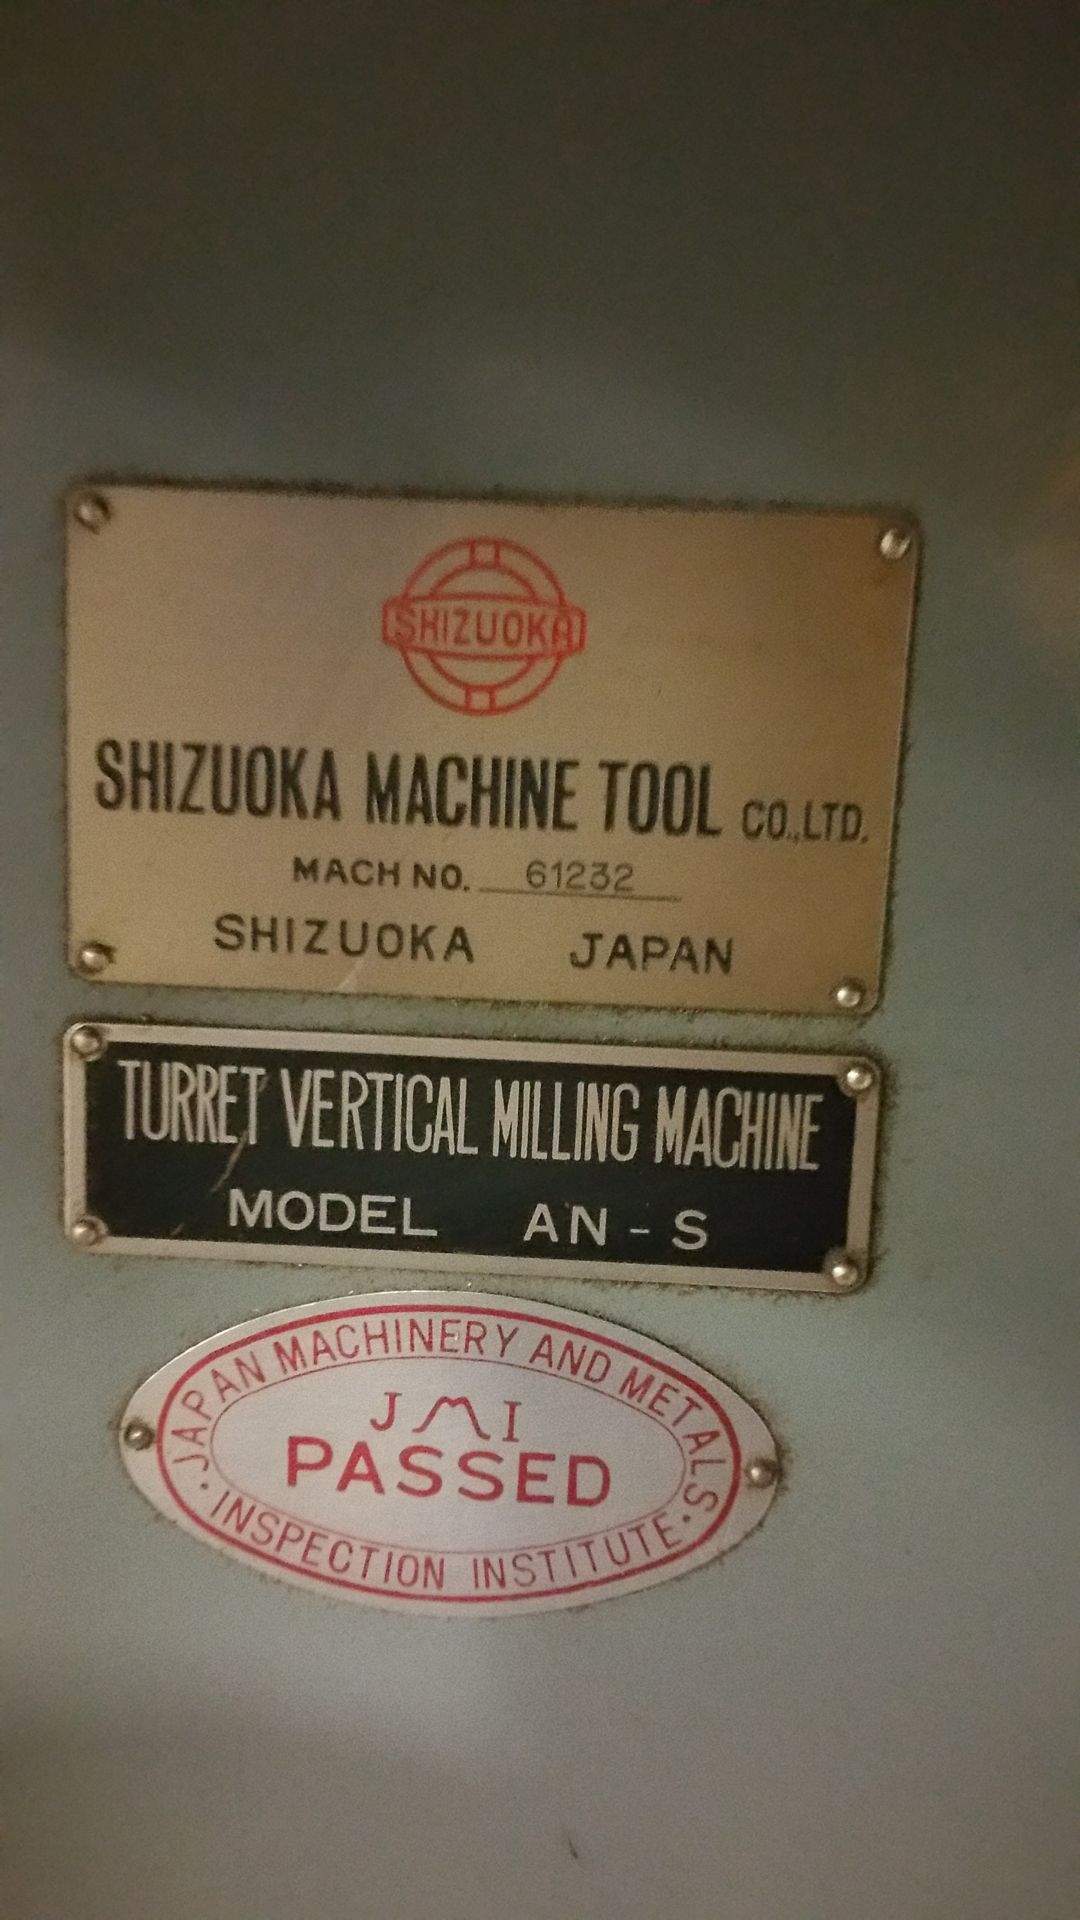 CNC VERTICAL MILLING MACHINE SHIZOUKA - Image 2 of 2